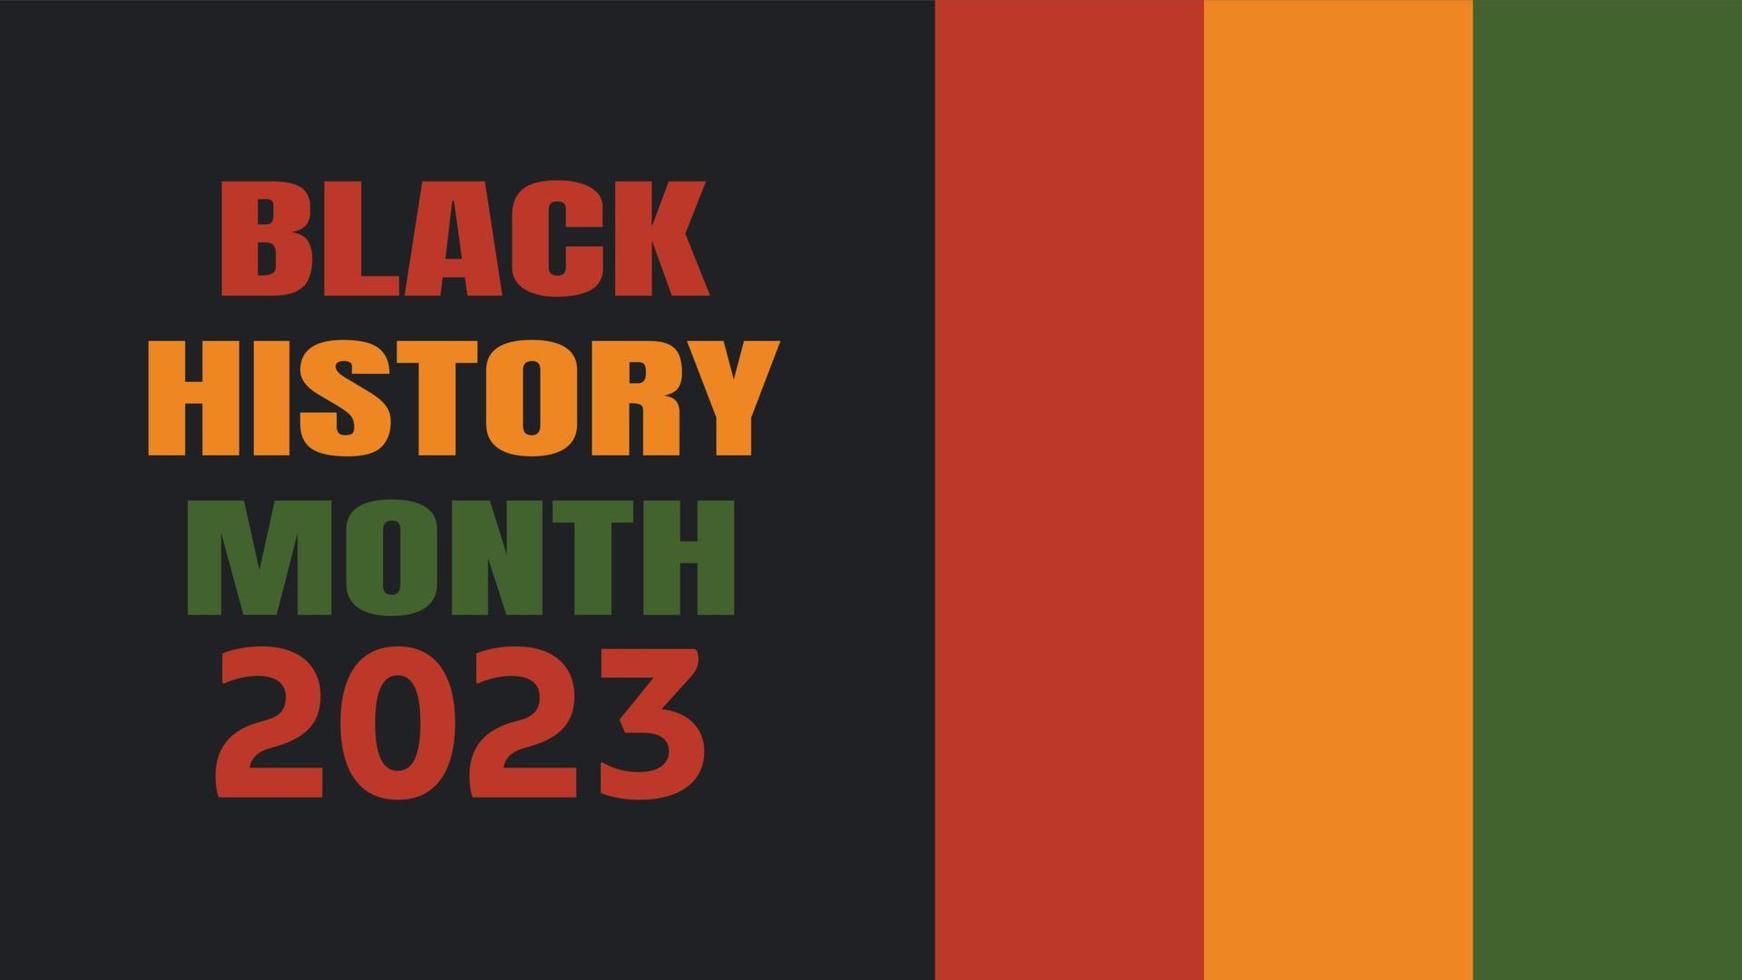 zwarte geschiedenismaand 2023 - Afro-Amerikaanse erfgoedviering in de VS. vectorillustratie met tekst, vlagstrepen in traditionele Afrikaanse kleuren - groen, rood, geel op zwarte achtergrond vector